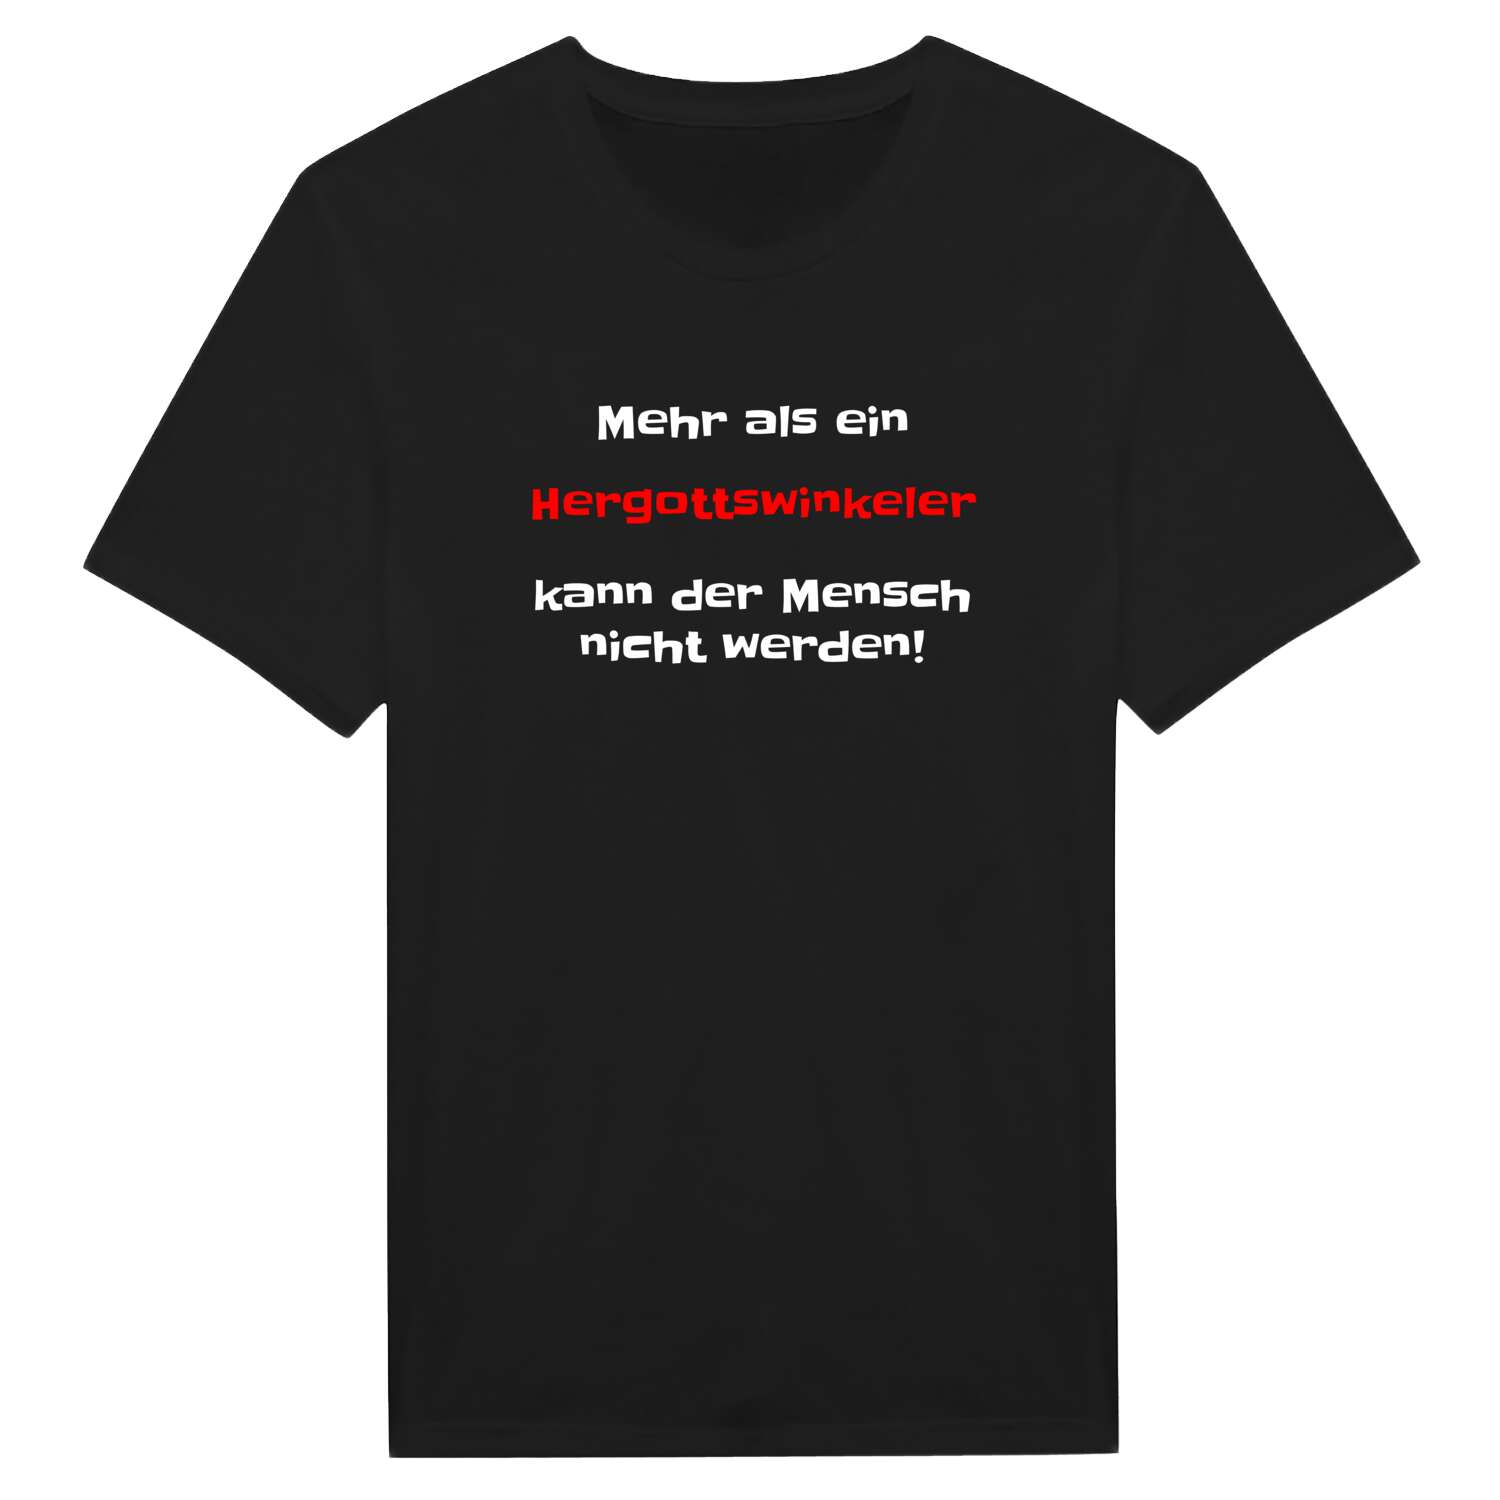 Hergottswinkel T-Shirt »Mehr als ein«